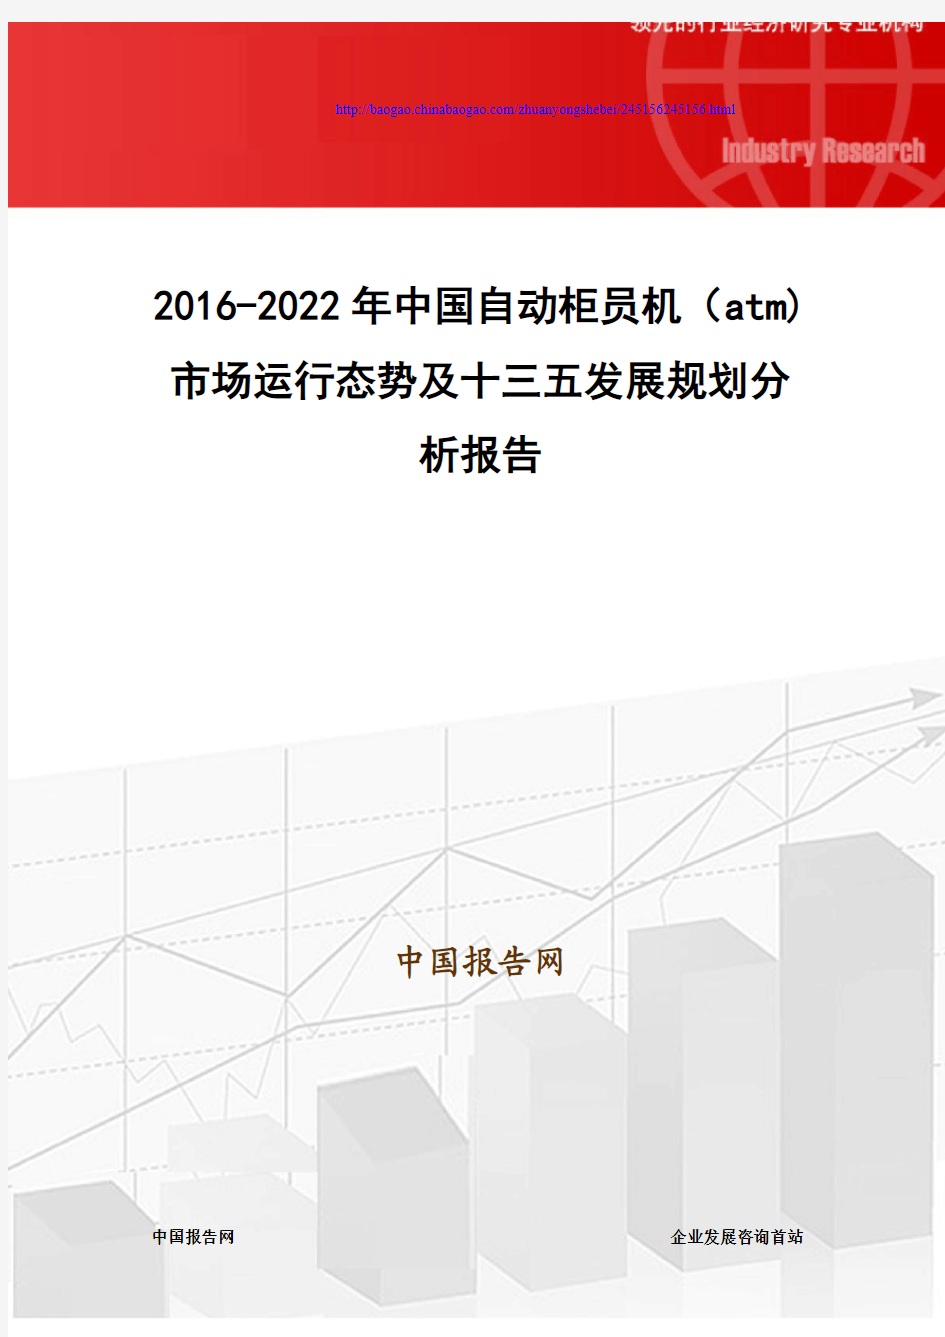 2016-2022年中国自动柜员机(atm) 市场运行态势及十三五发展规划分析报告